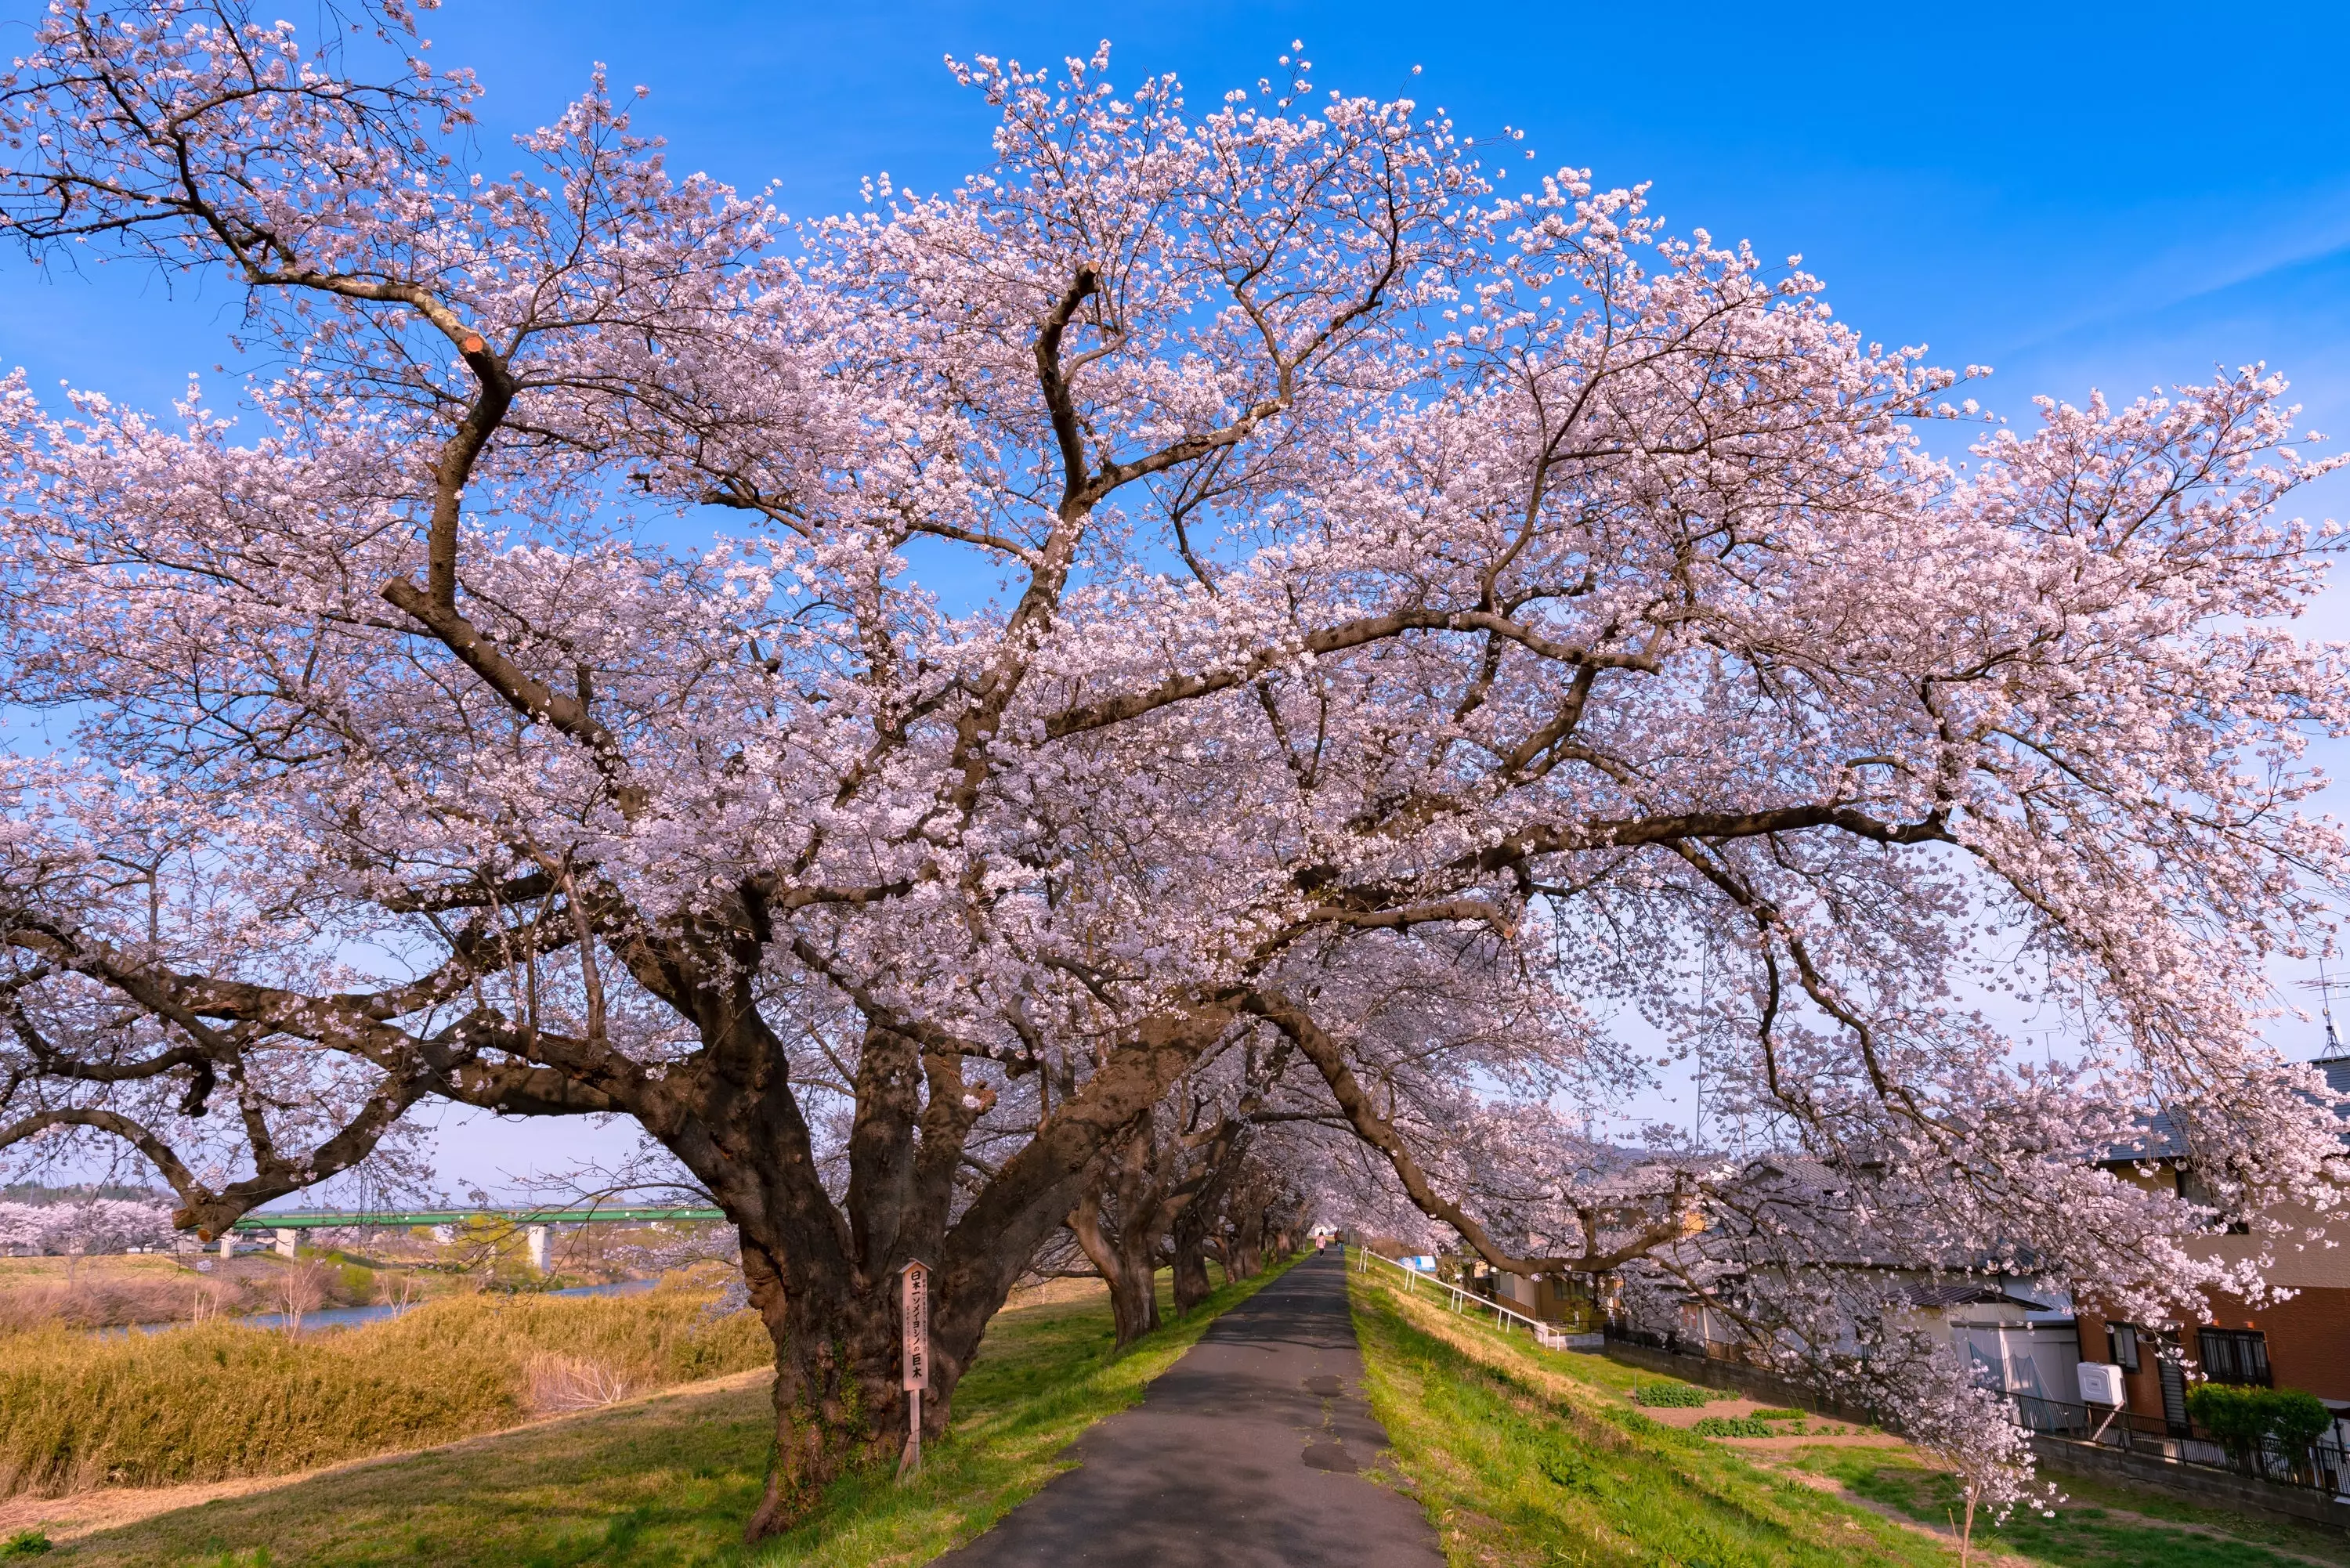 Yoshino Cherry Trees